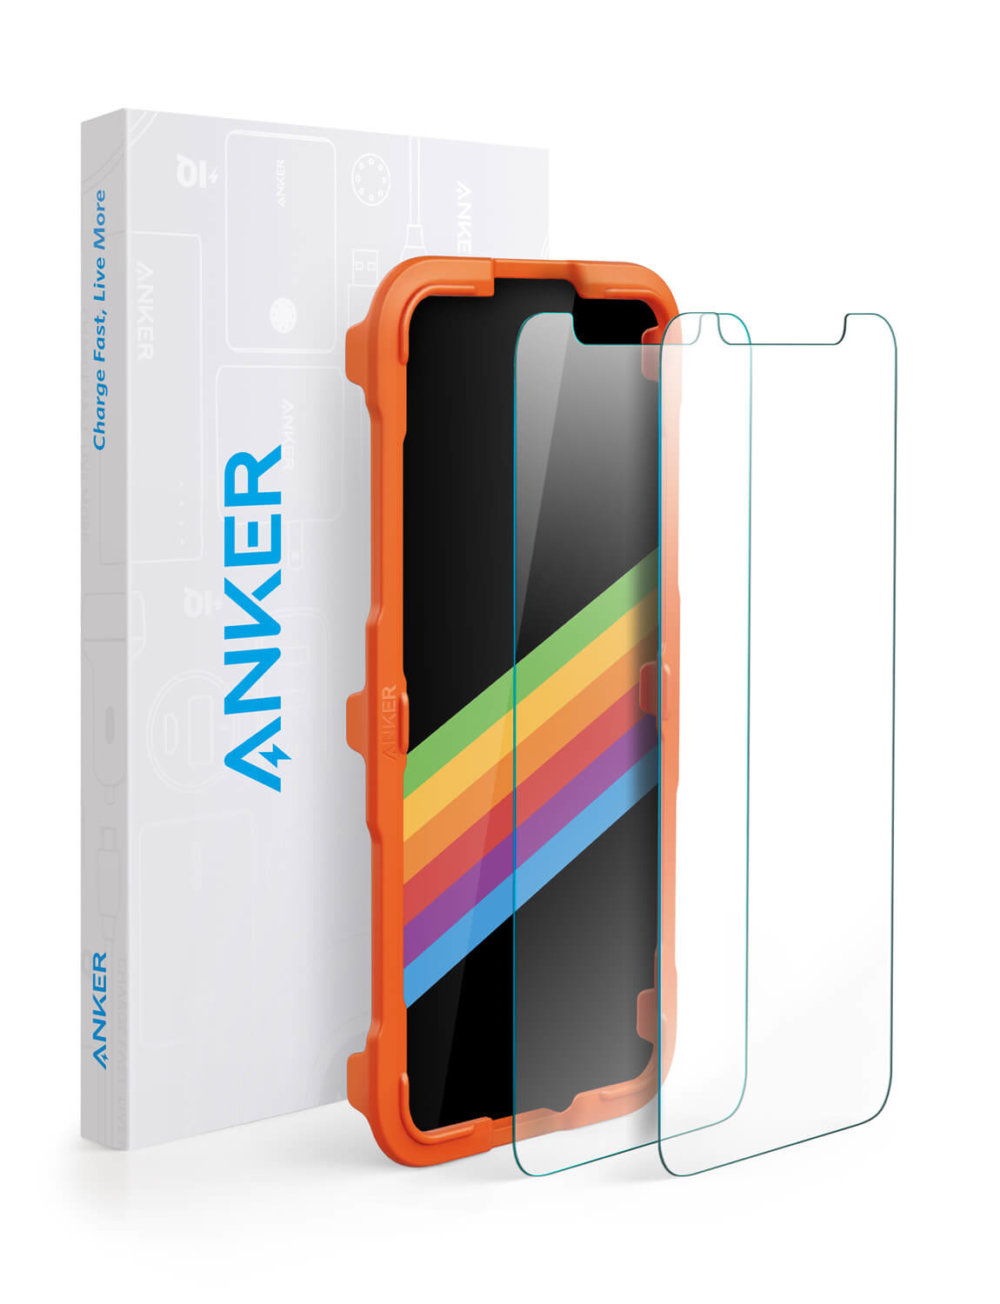 強化ガラス液晶保護フィルム「Anker GlassGuard iPhone 11 Pro/XS/X用」